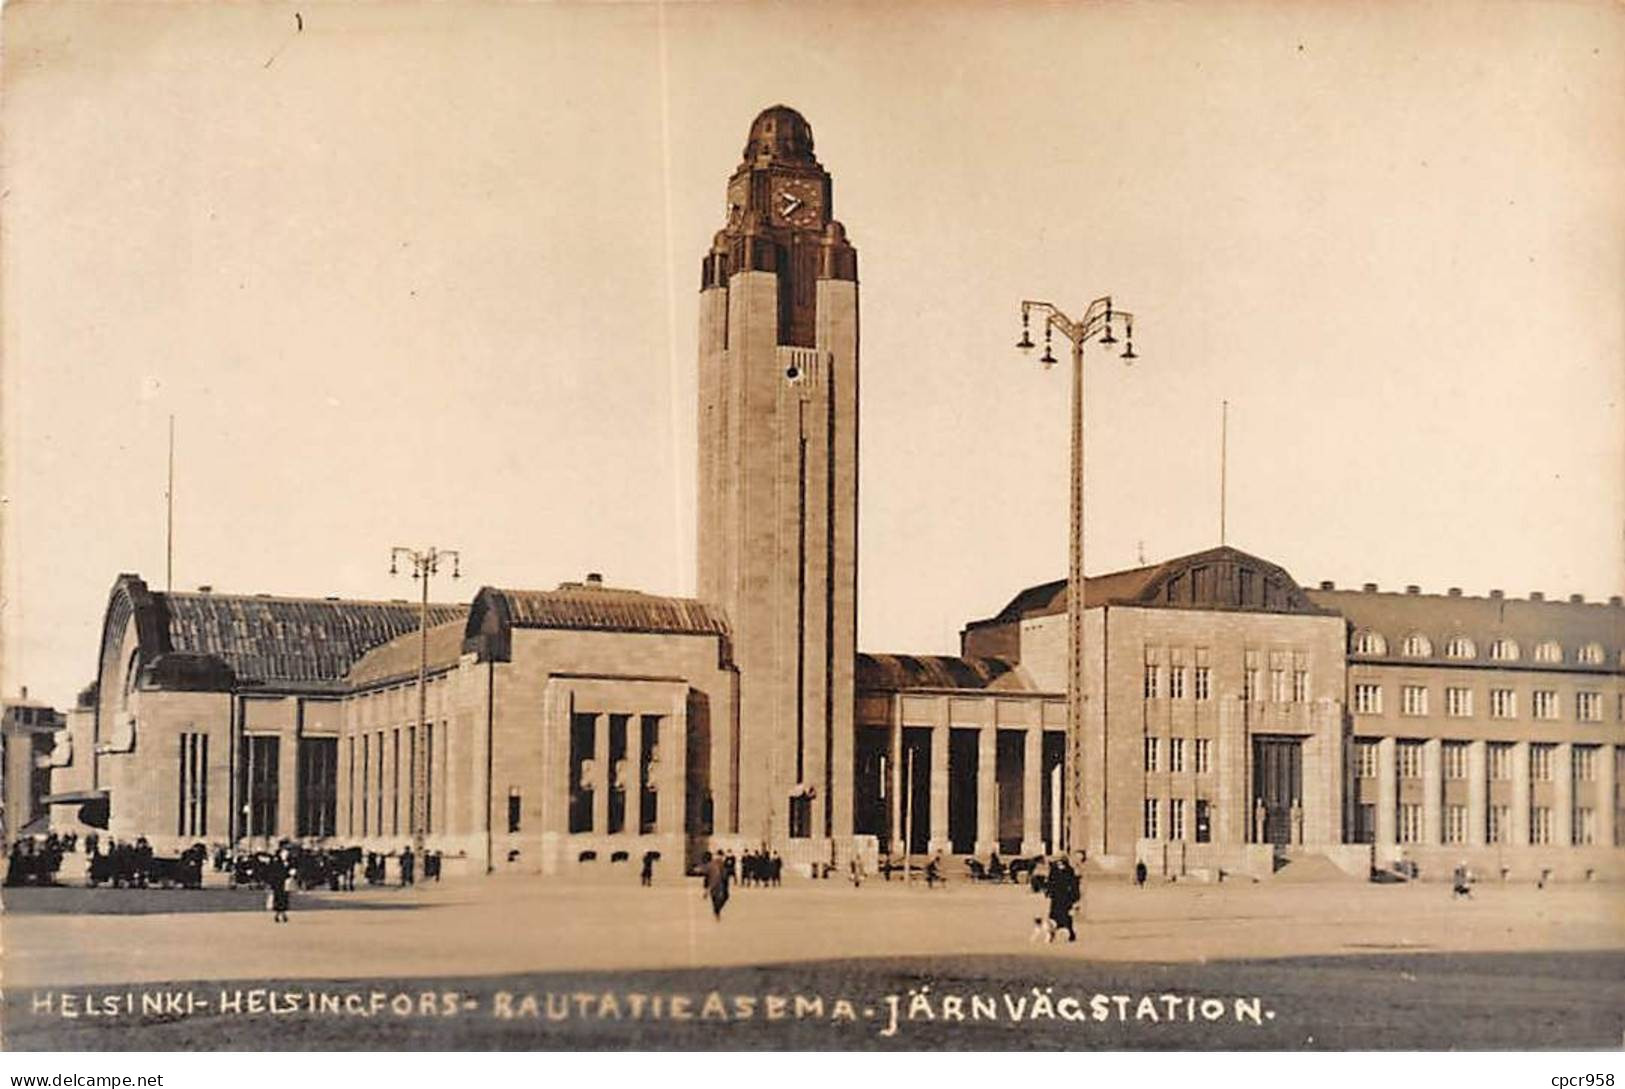 FINLAND - HELSINKI - SAN39276 - Helsingfors - Rautatieasema - Järnvägstation - Finlandia